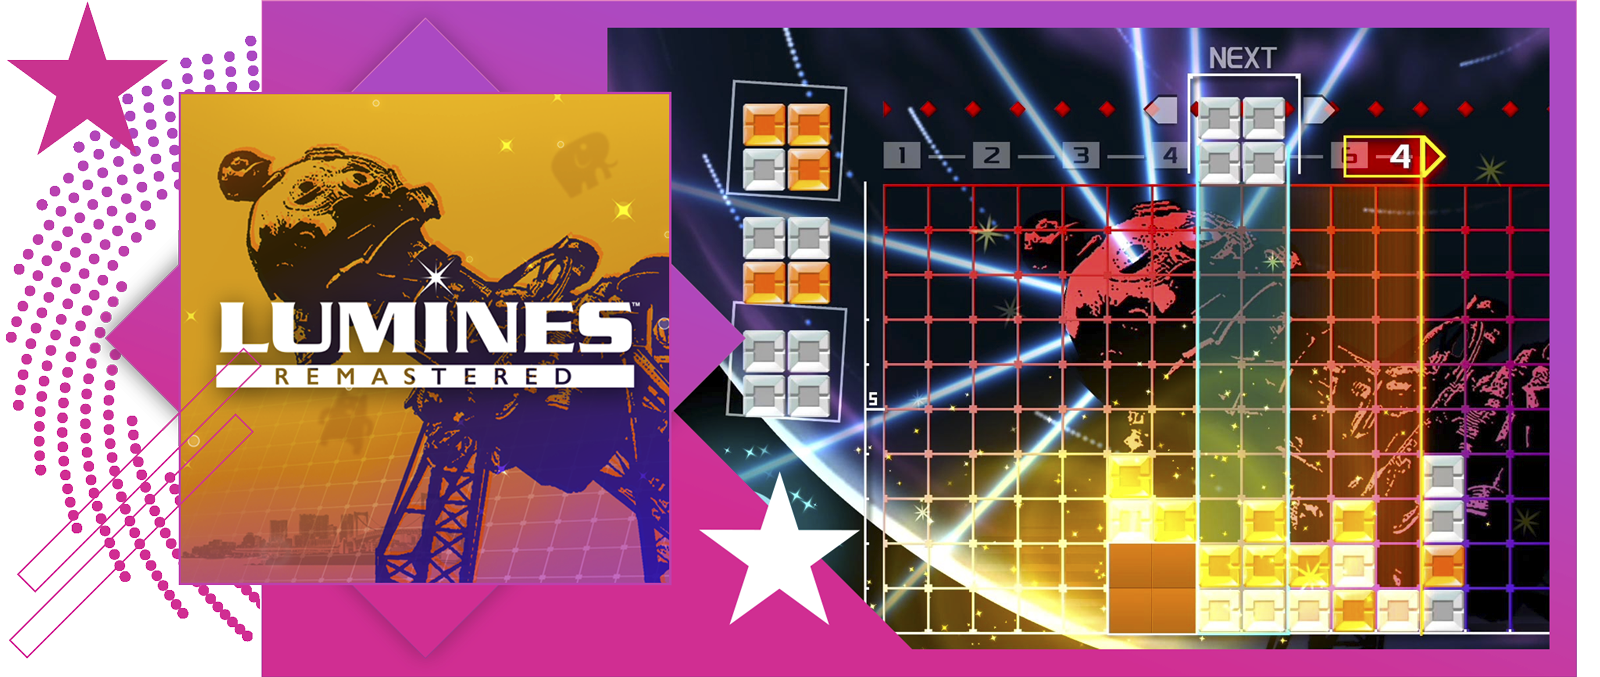 Nejlepší rytmické hry – obrázek s klíčovou grafikou a ukázkou ze hry Lumines Remastered